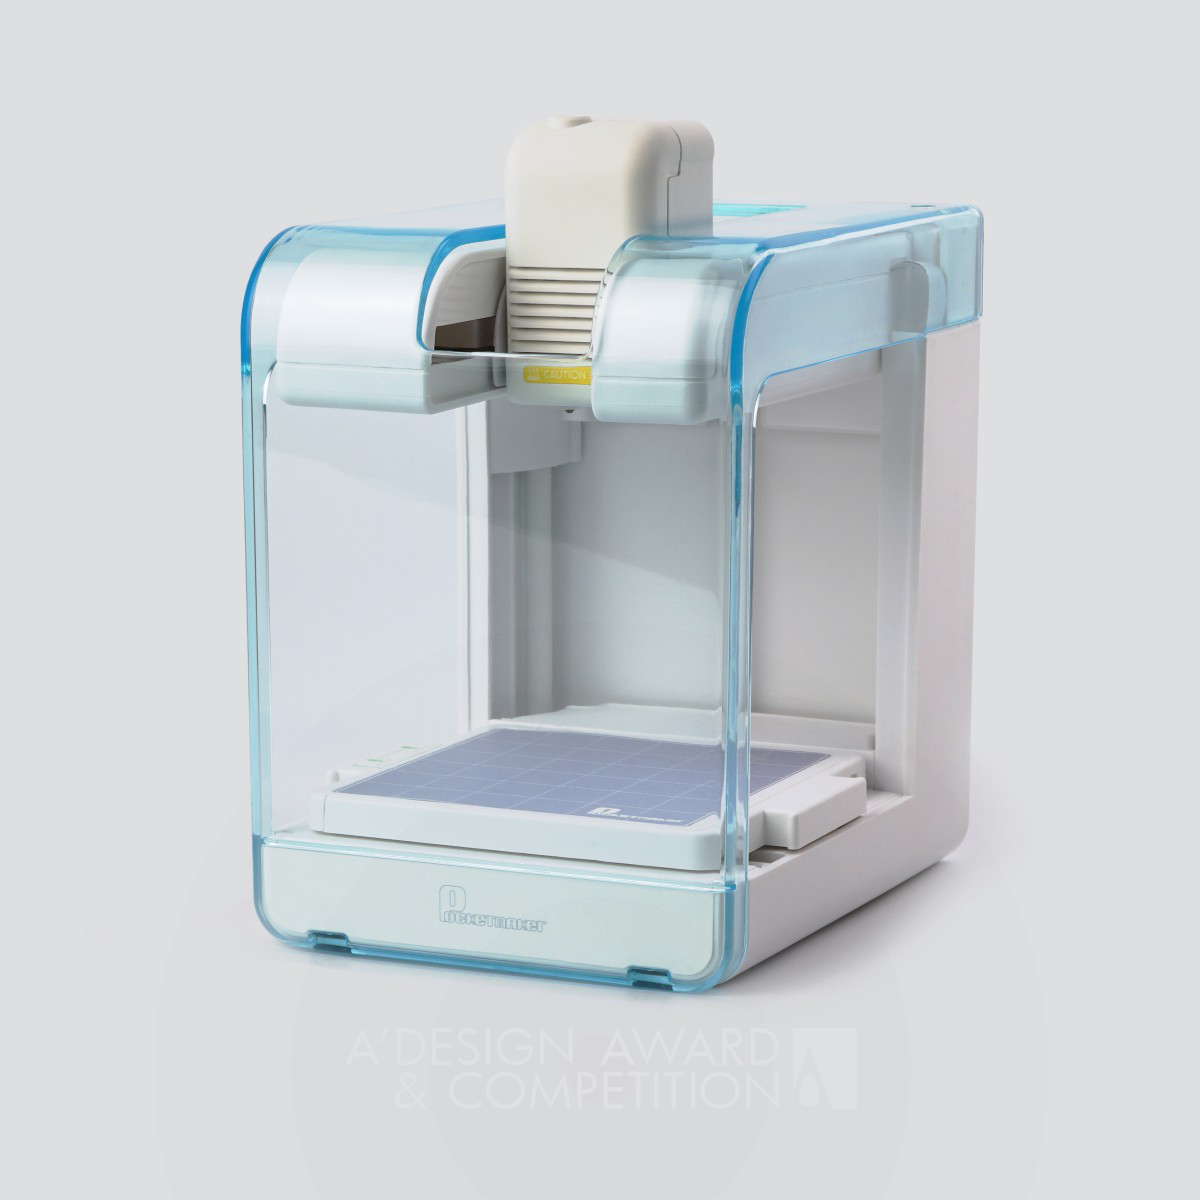 PocketMaker 3D Printer by Lang Qiyue and Yang Tian